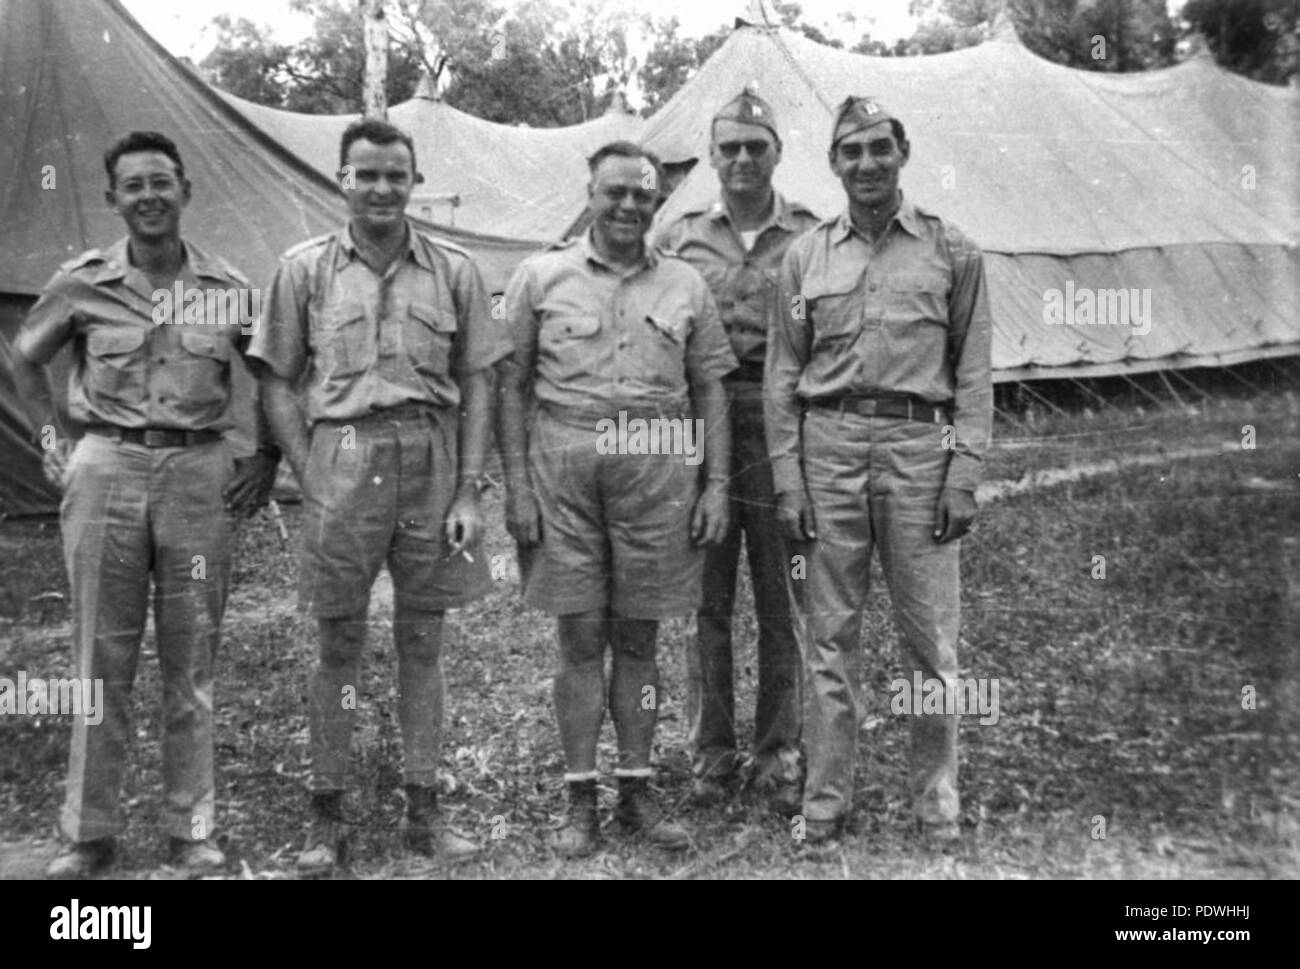 237 1 164947 StateLibQld personnel médical de la 13e Armée américaine à l'hôpital de la Station, ca. 1942 Banque D'Images